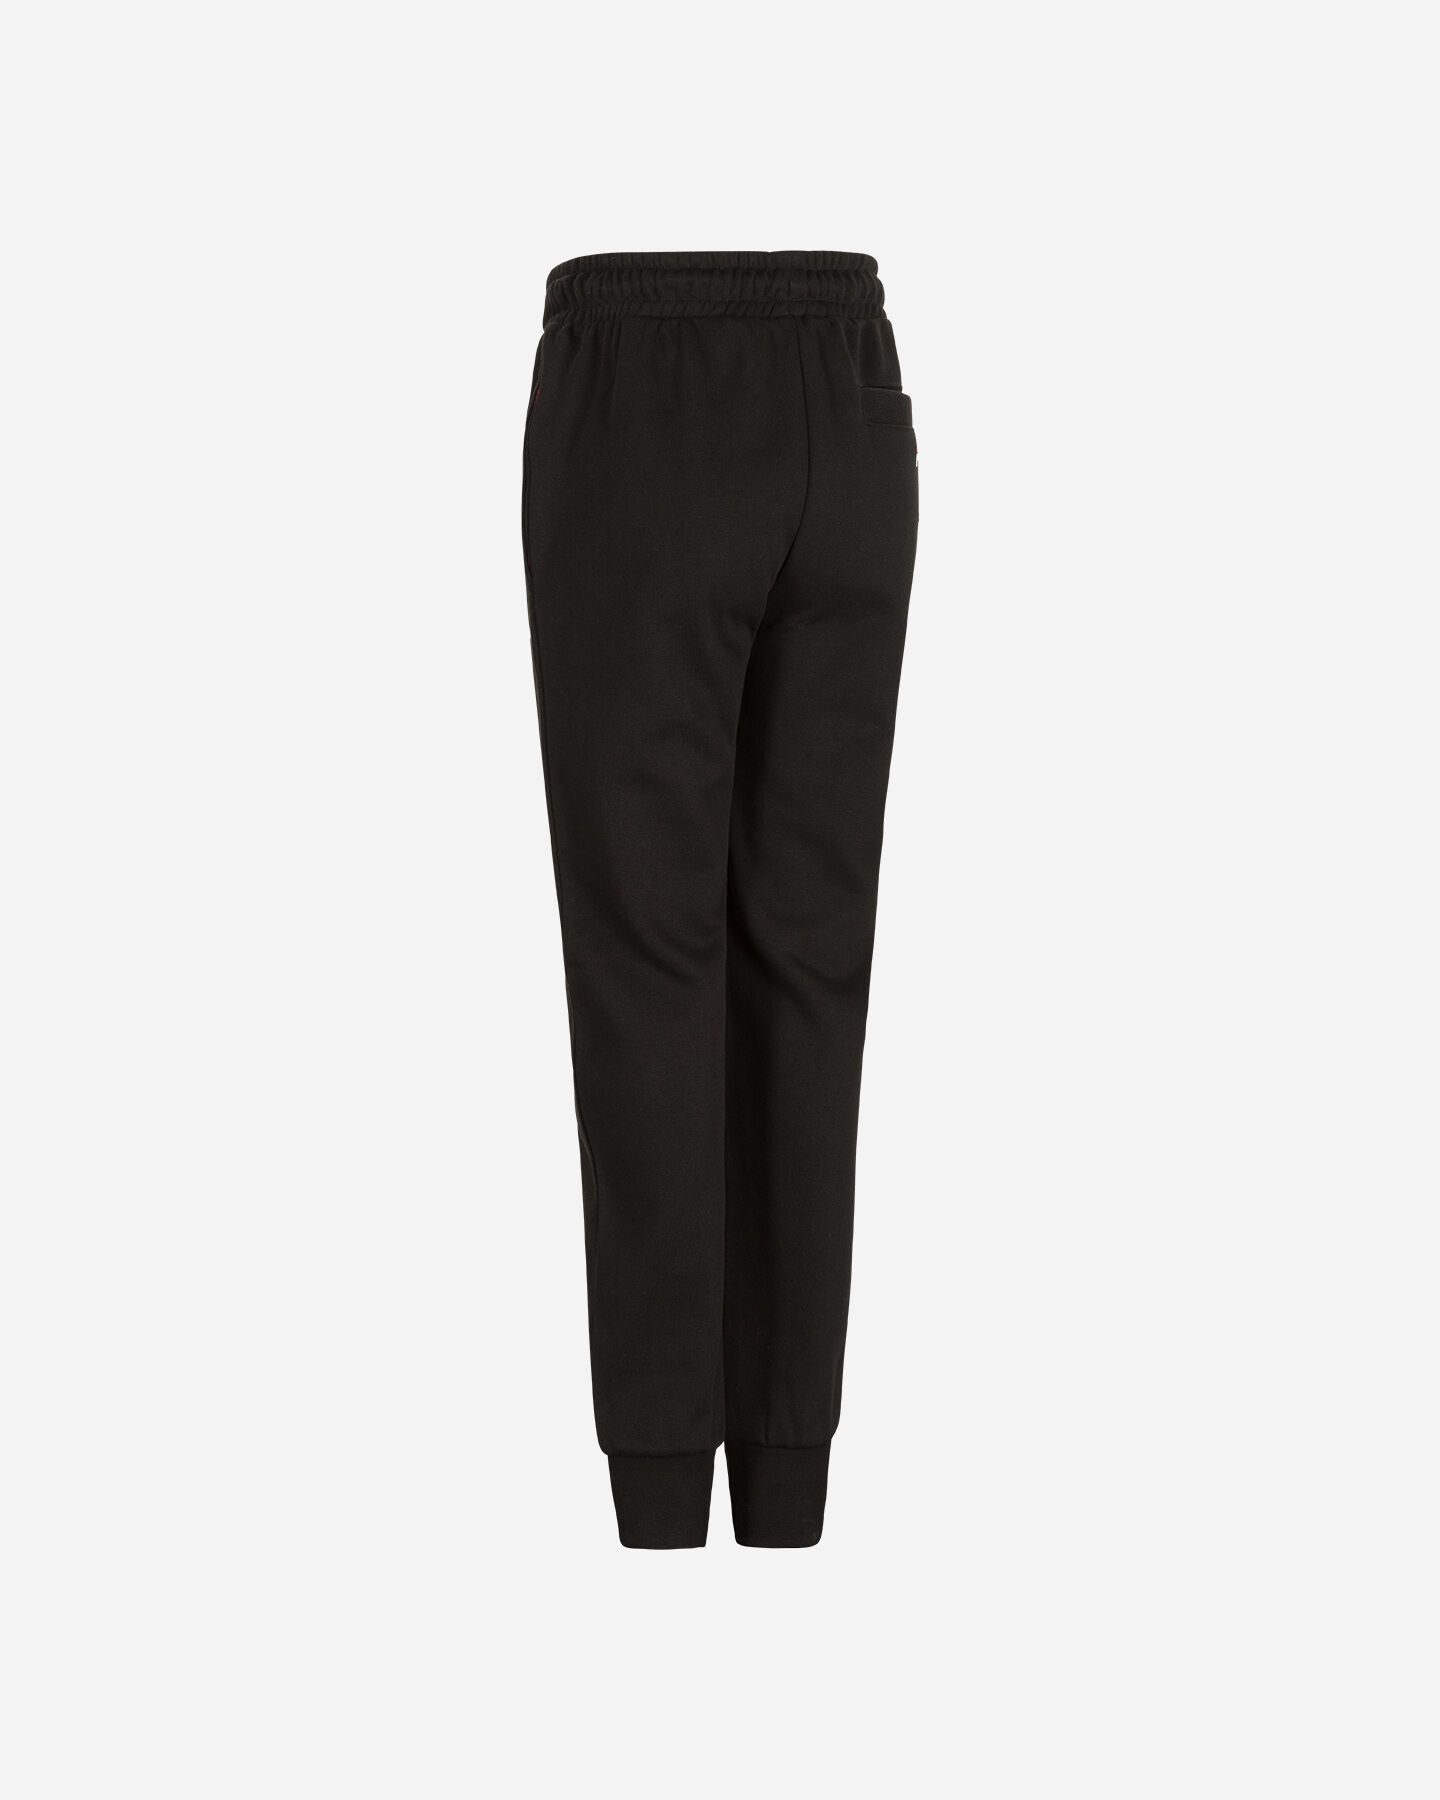  Pantalone FILA SMALL LOGO JR S4088601|050|4A scatto 1